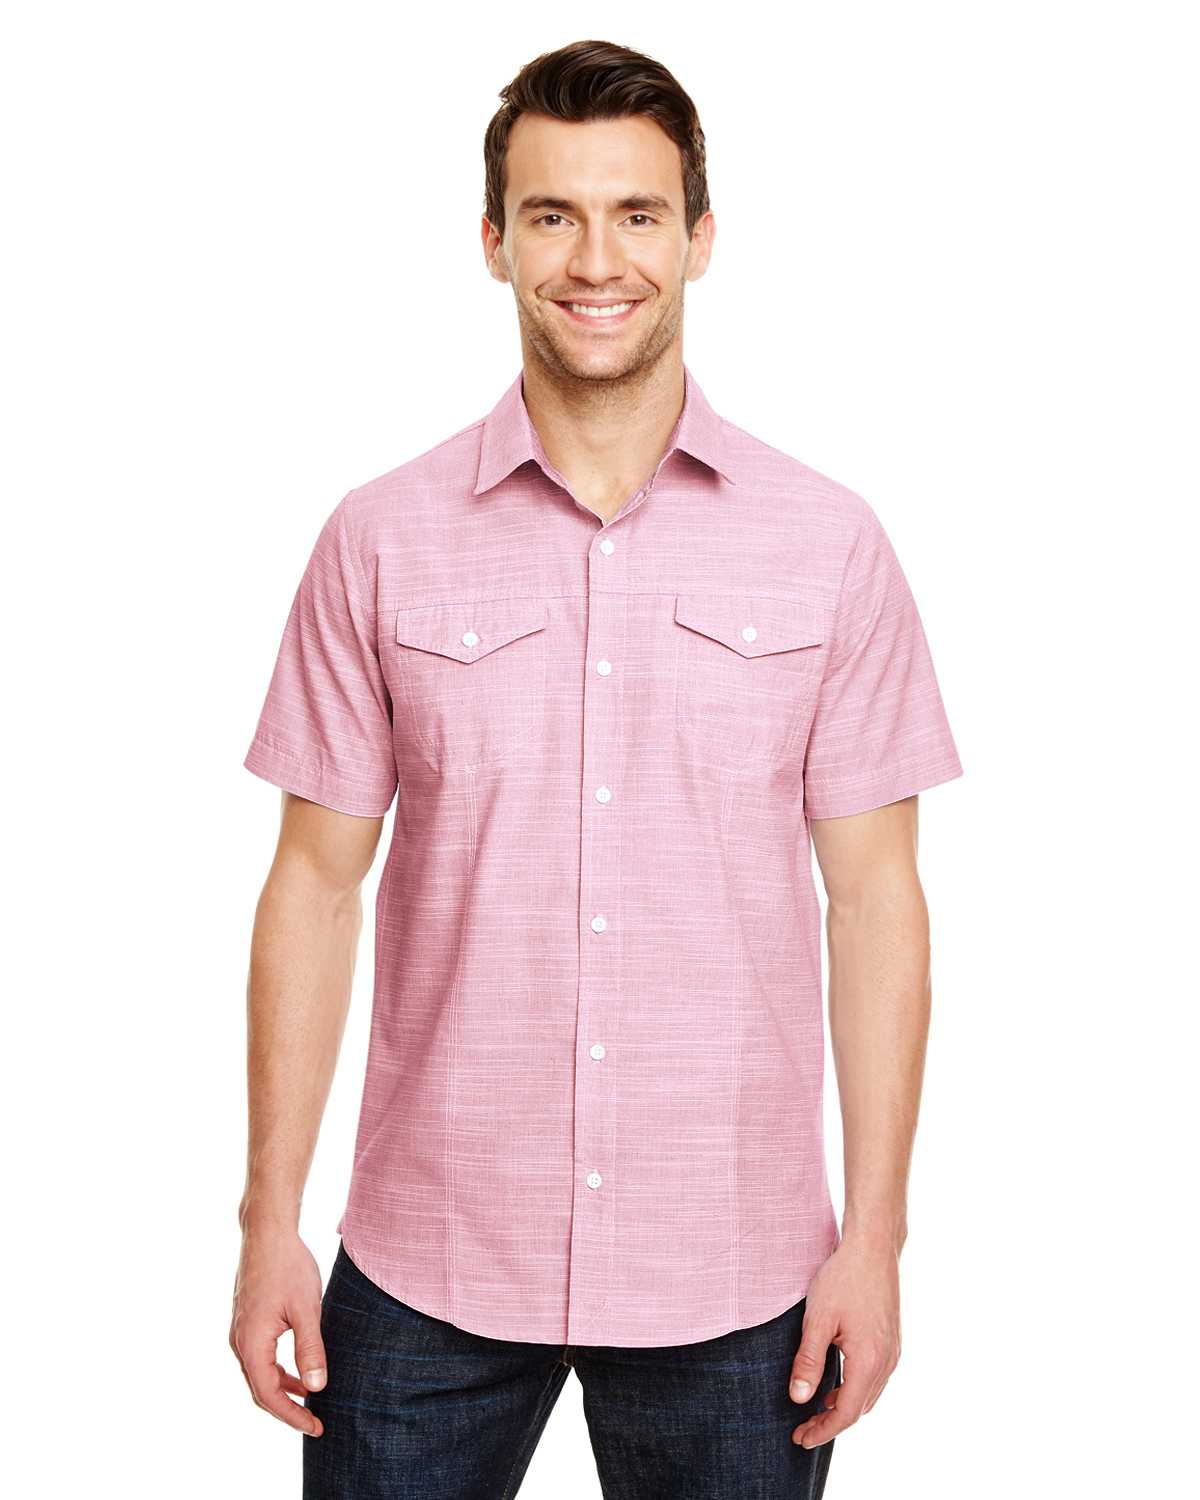 Burnside B9247 Men's Textured Woven Shirt | ApparelChoice.com